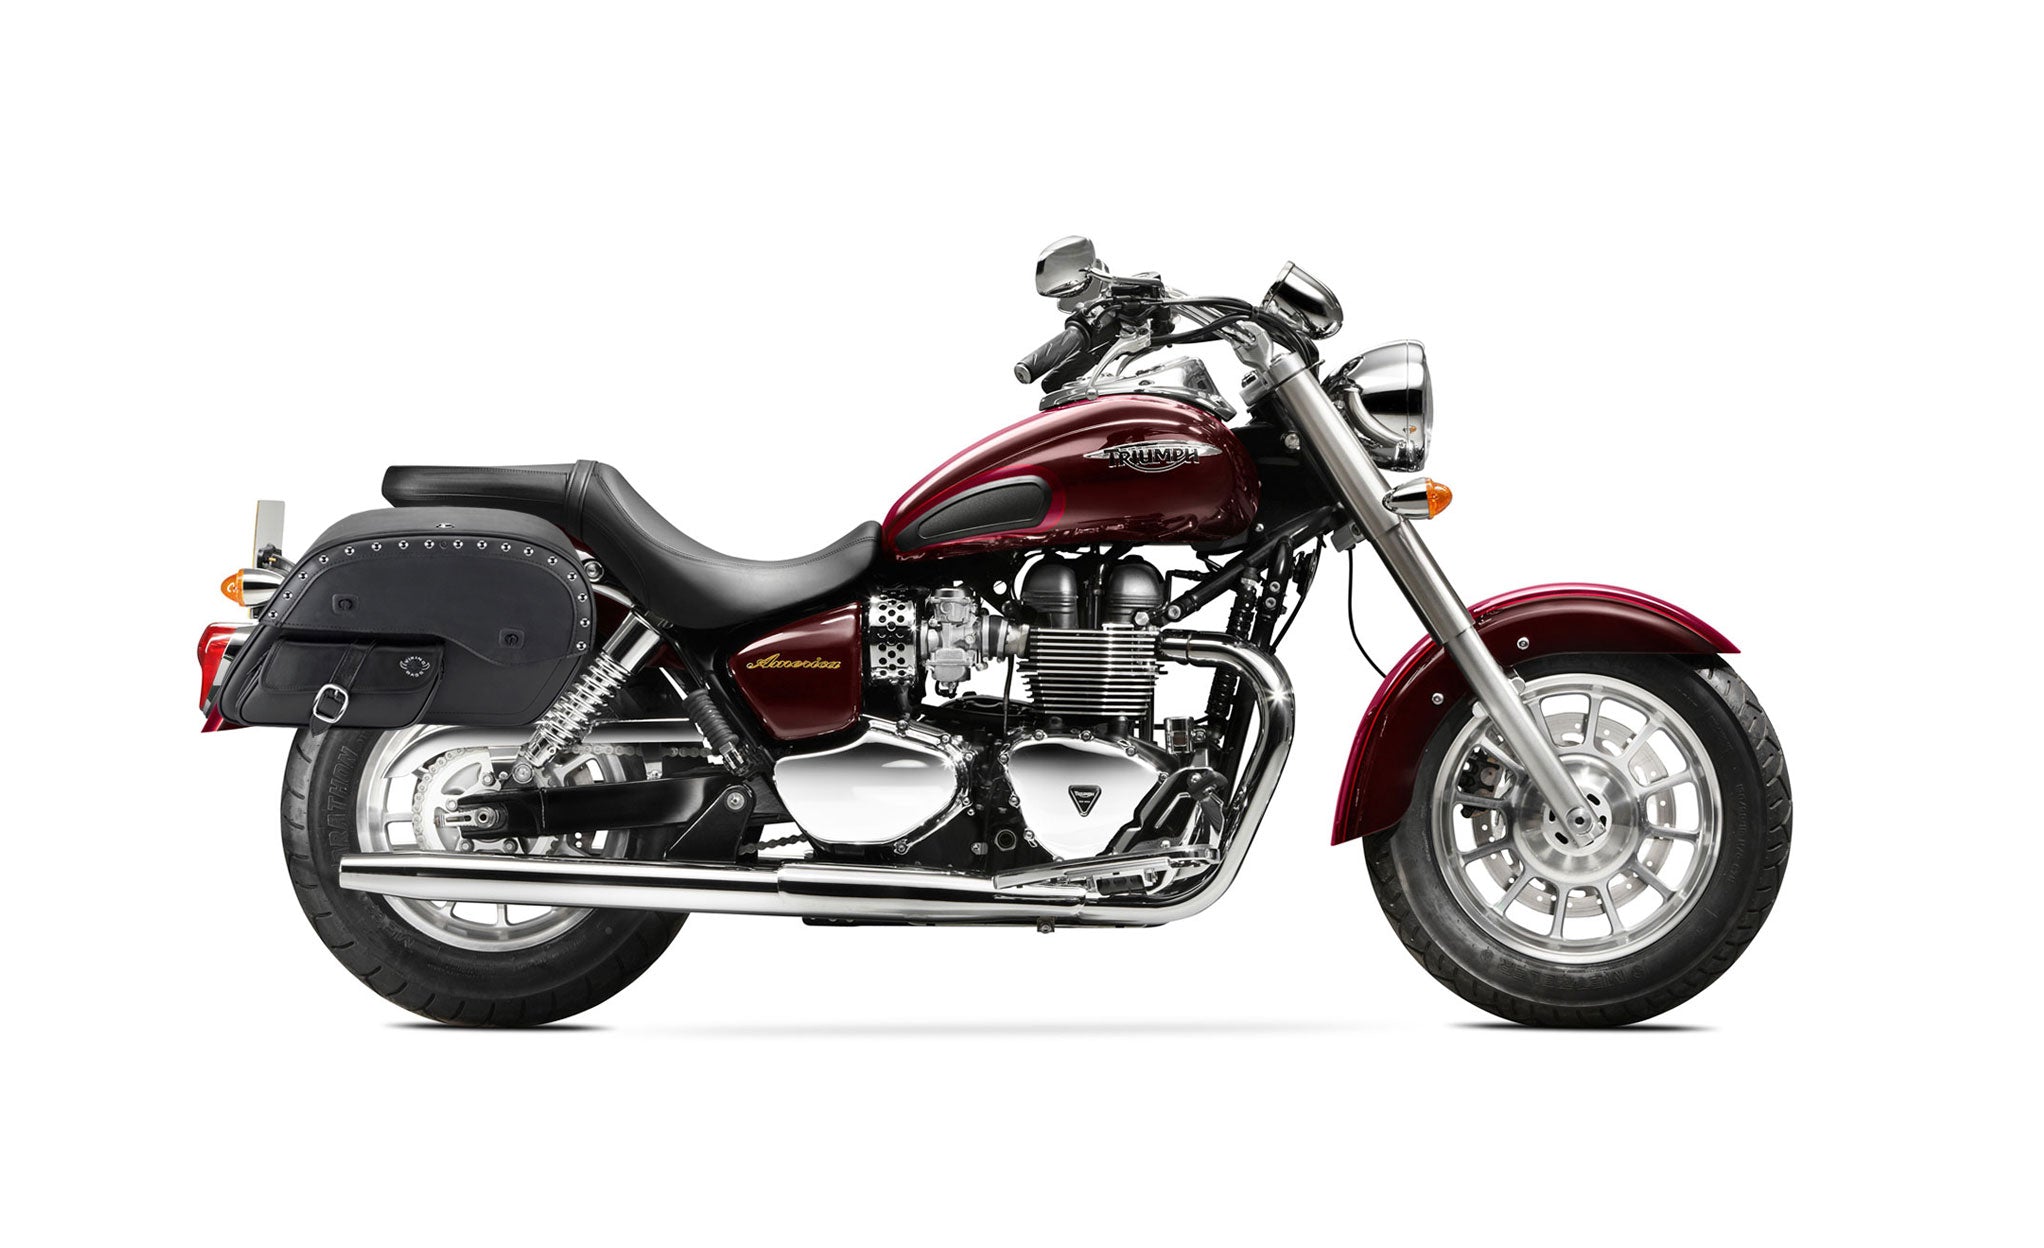 Viking Side Pocket Large Studded Triumph America Leather Motorcycle Saddlebags on Bike Photo @expand